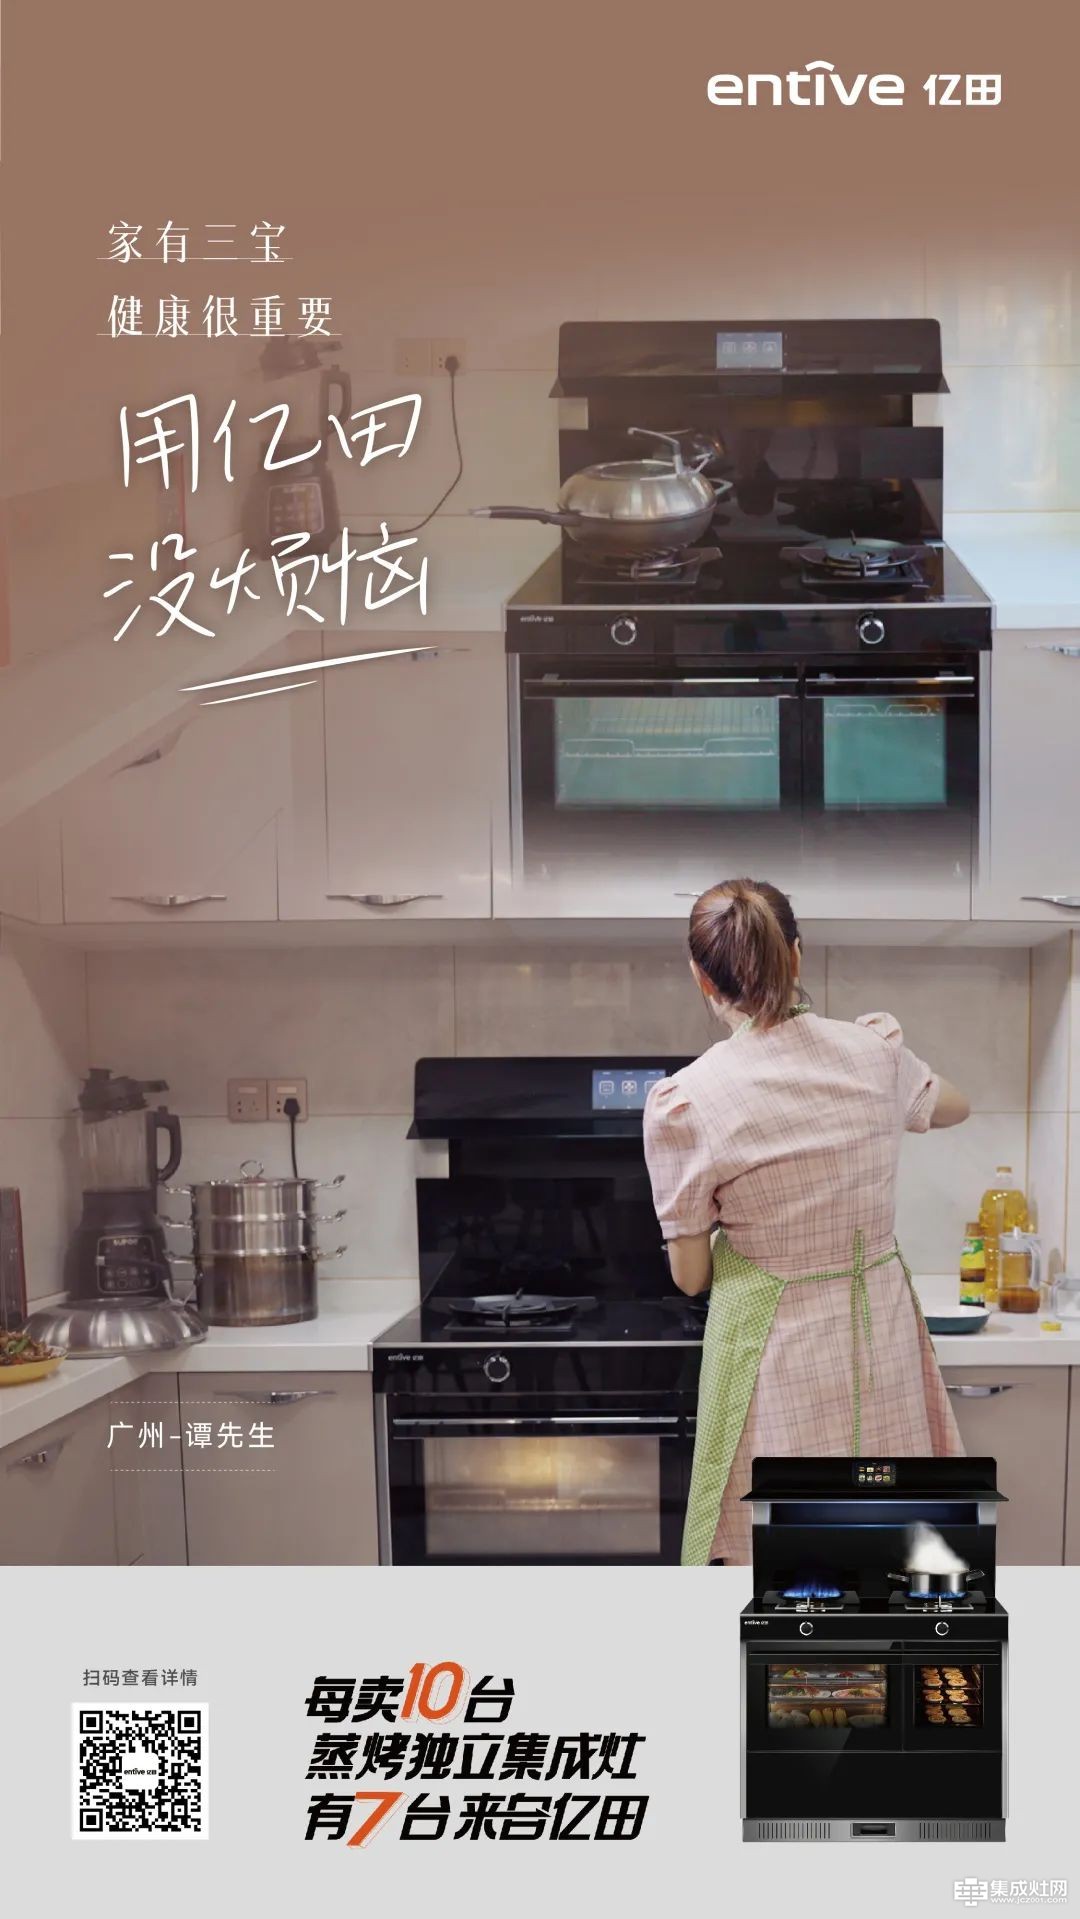 广州用户谭先生 三娃家庭 健康厨房选亿田